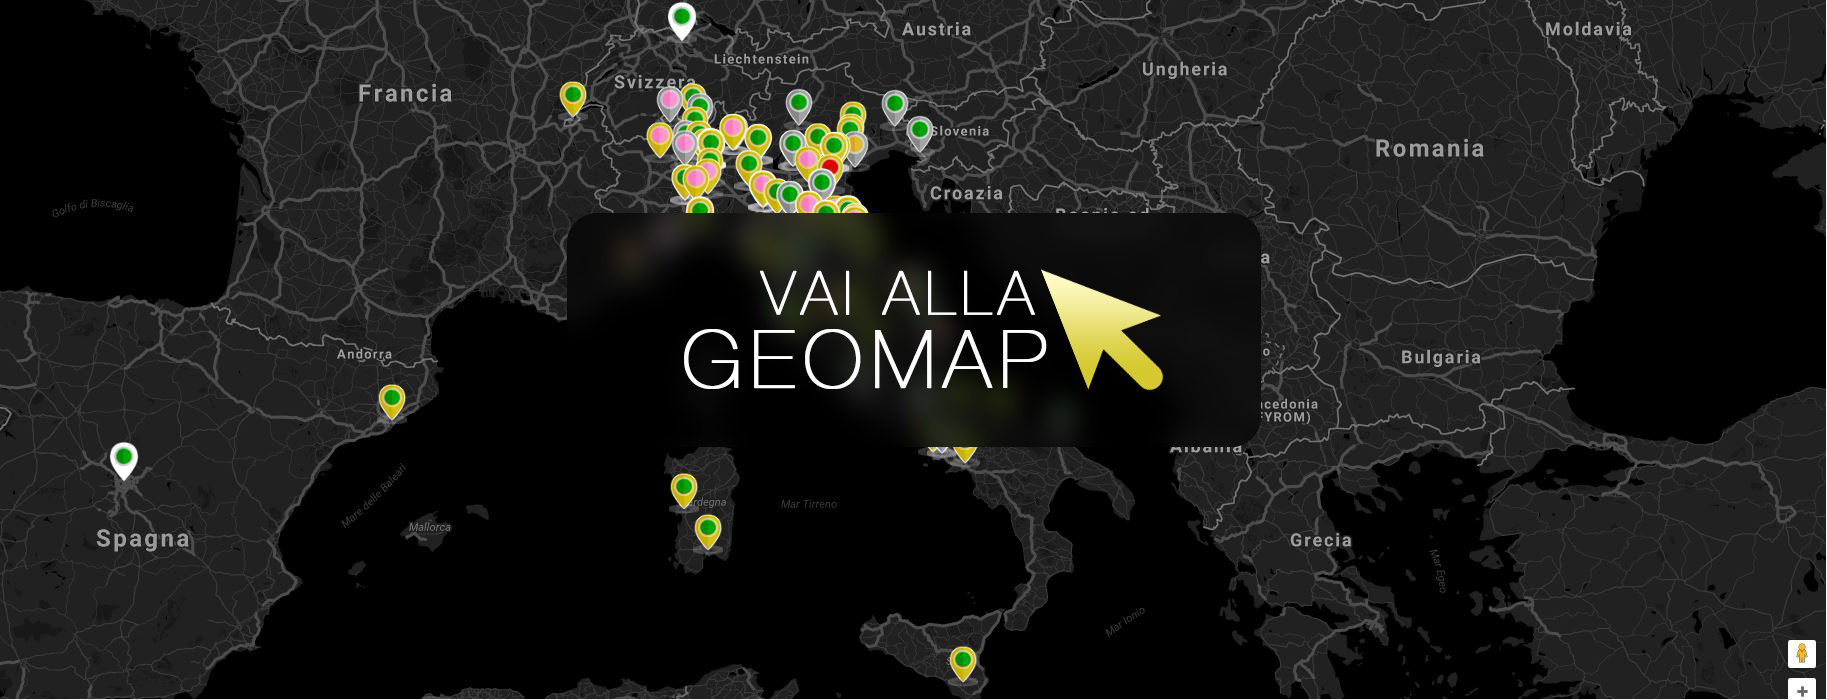 Guarda gli annunci a Vercelli nella mappa intervattiva